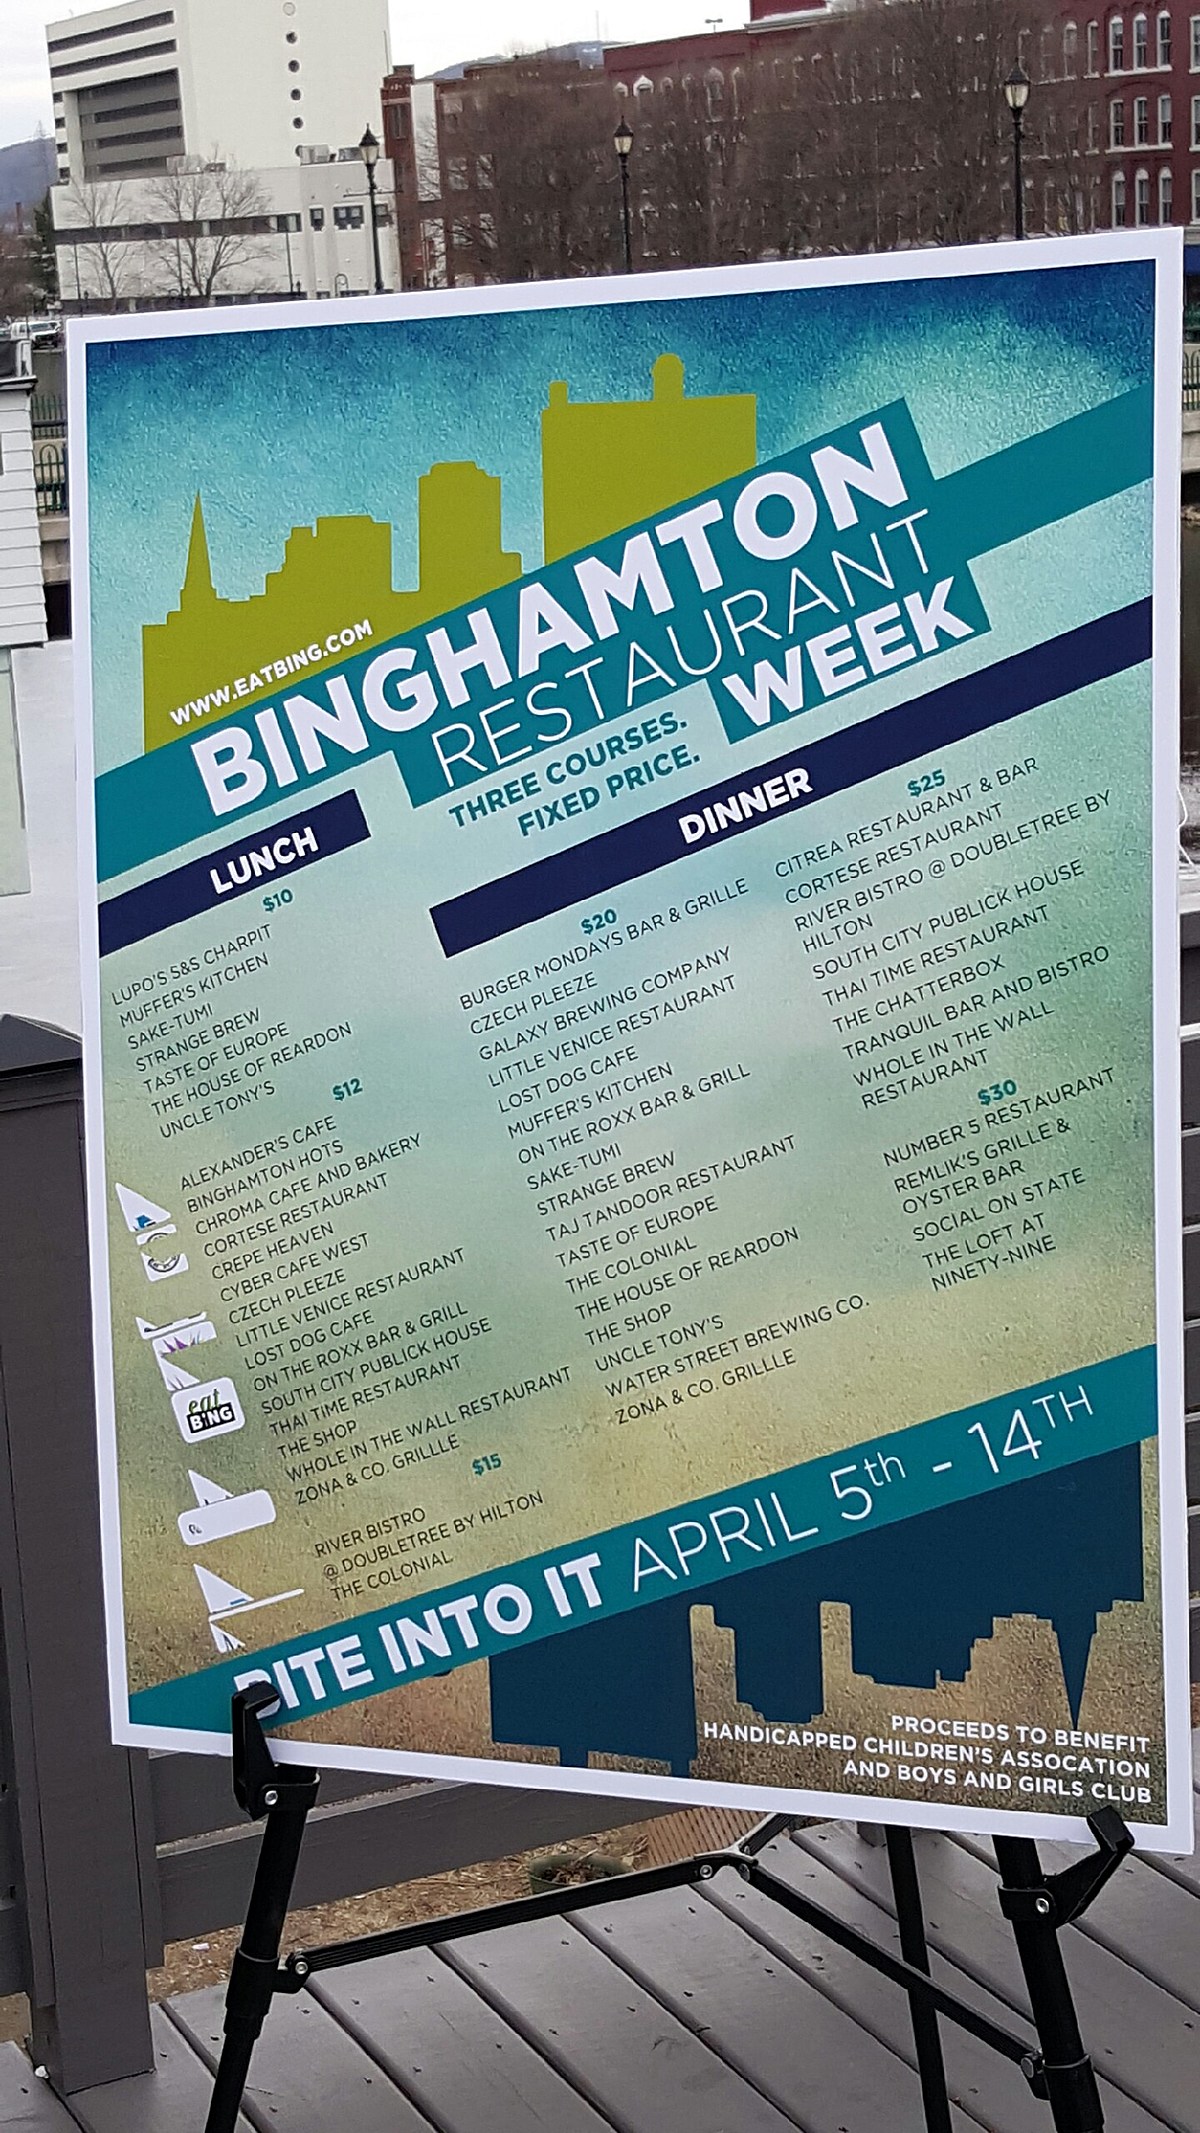 binghamton-restaurant-week-begins-april-5